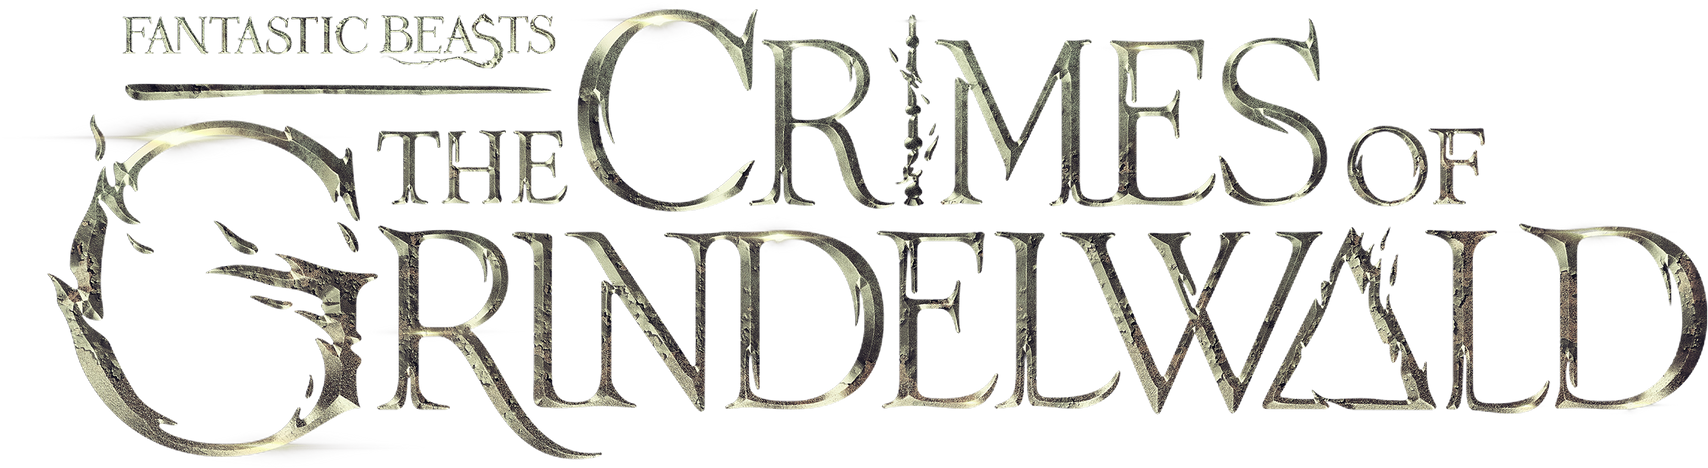 Bildresultat fÃ¶r the crimes of grindelwald logo